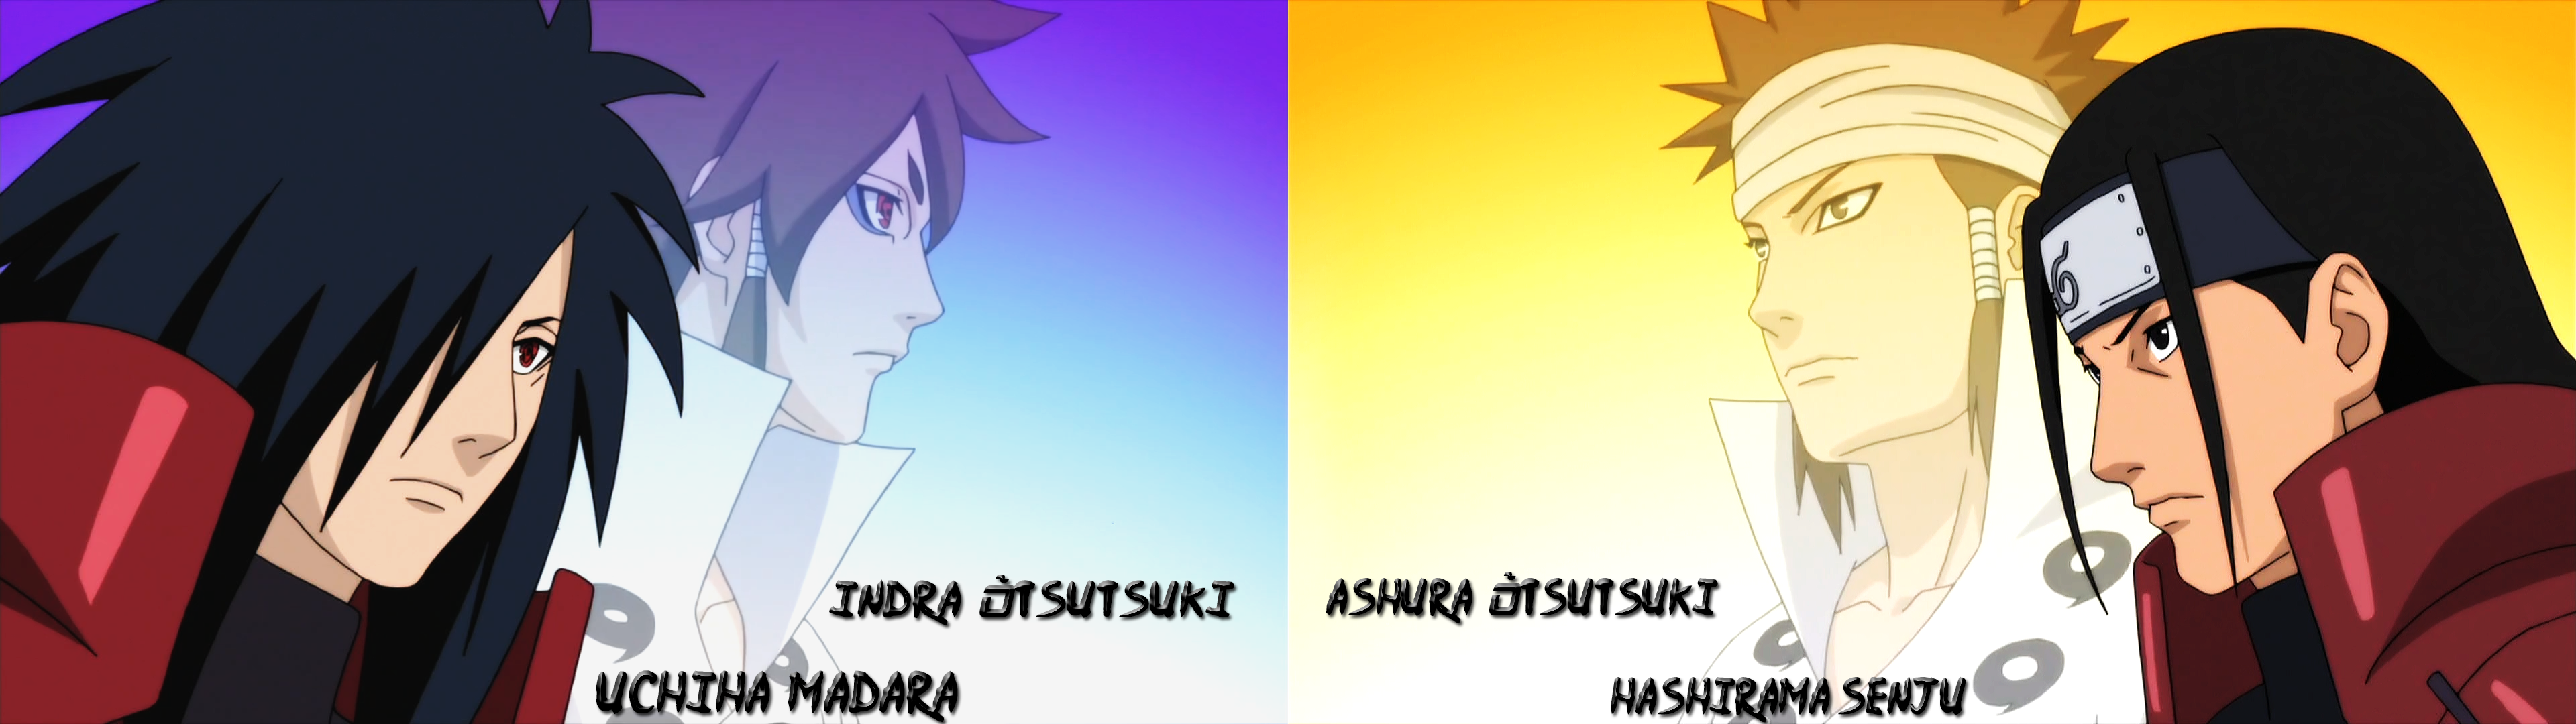 Uchiha Madara (Indra Õtsutsuki) & Senju Hashirama (Ashura Õtsutsuki) /  Background anime Naruto